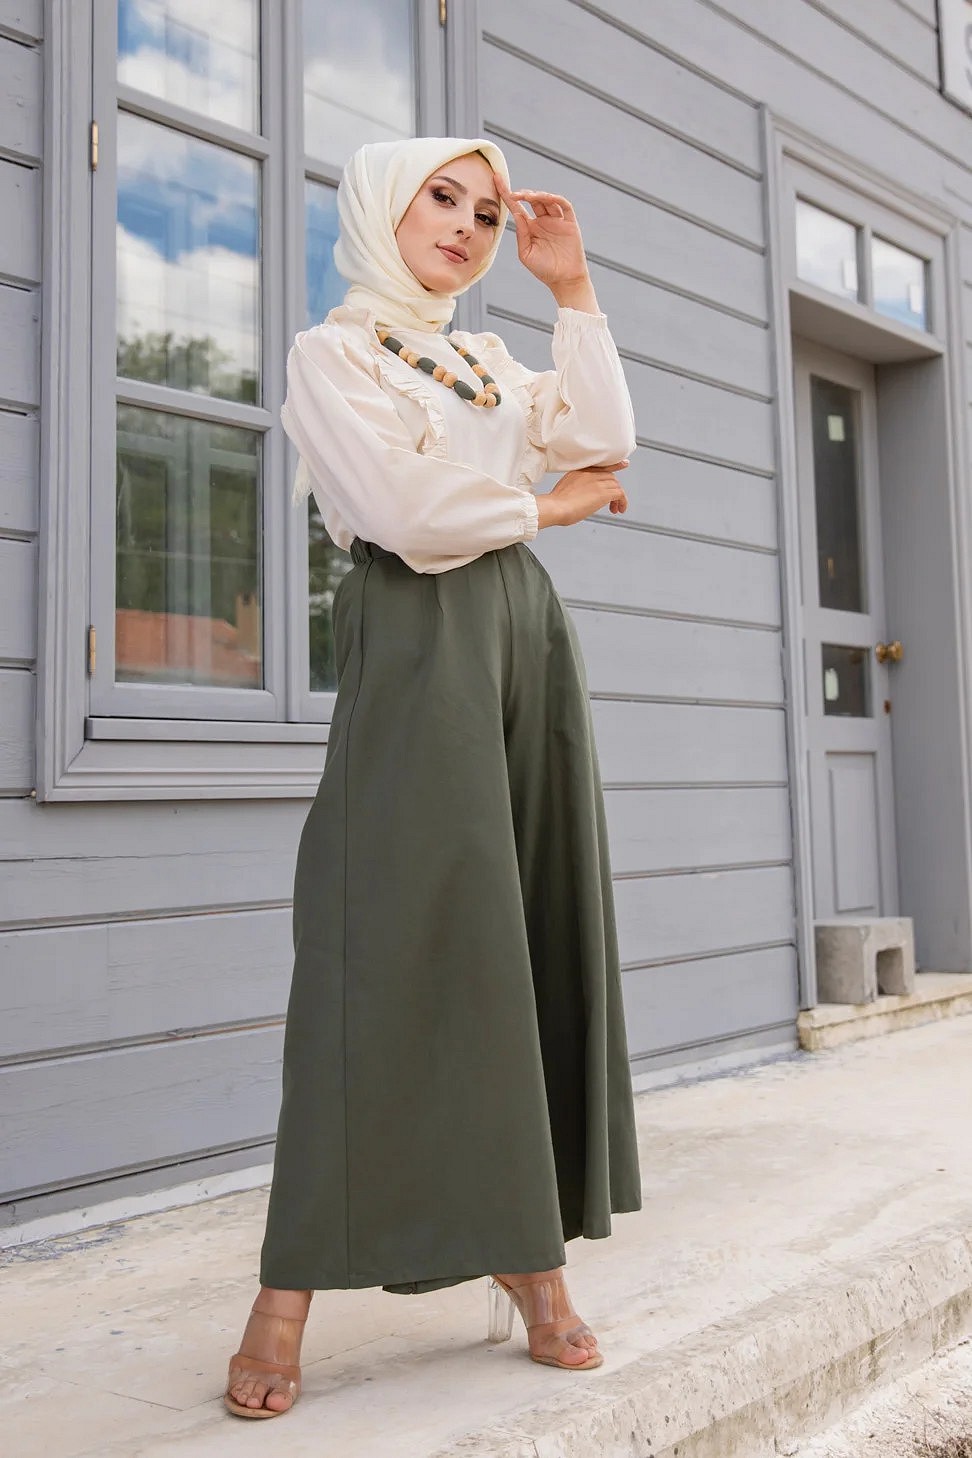 Ensemble casual femme veste et pantalon (Vetement Hijab) - Couleur beige